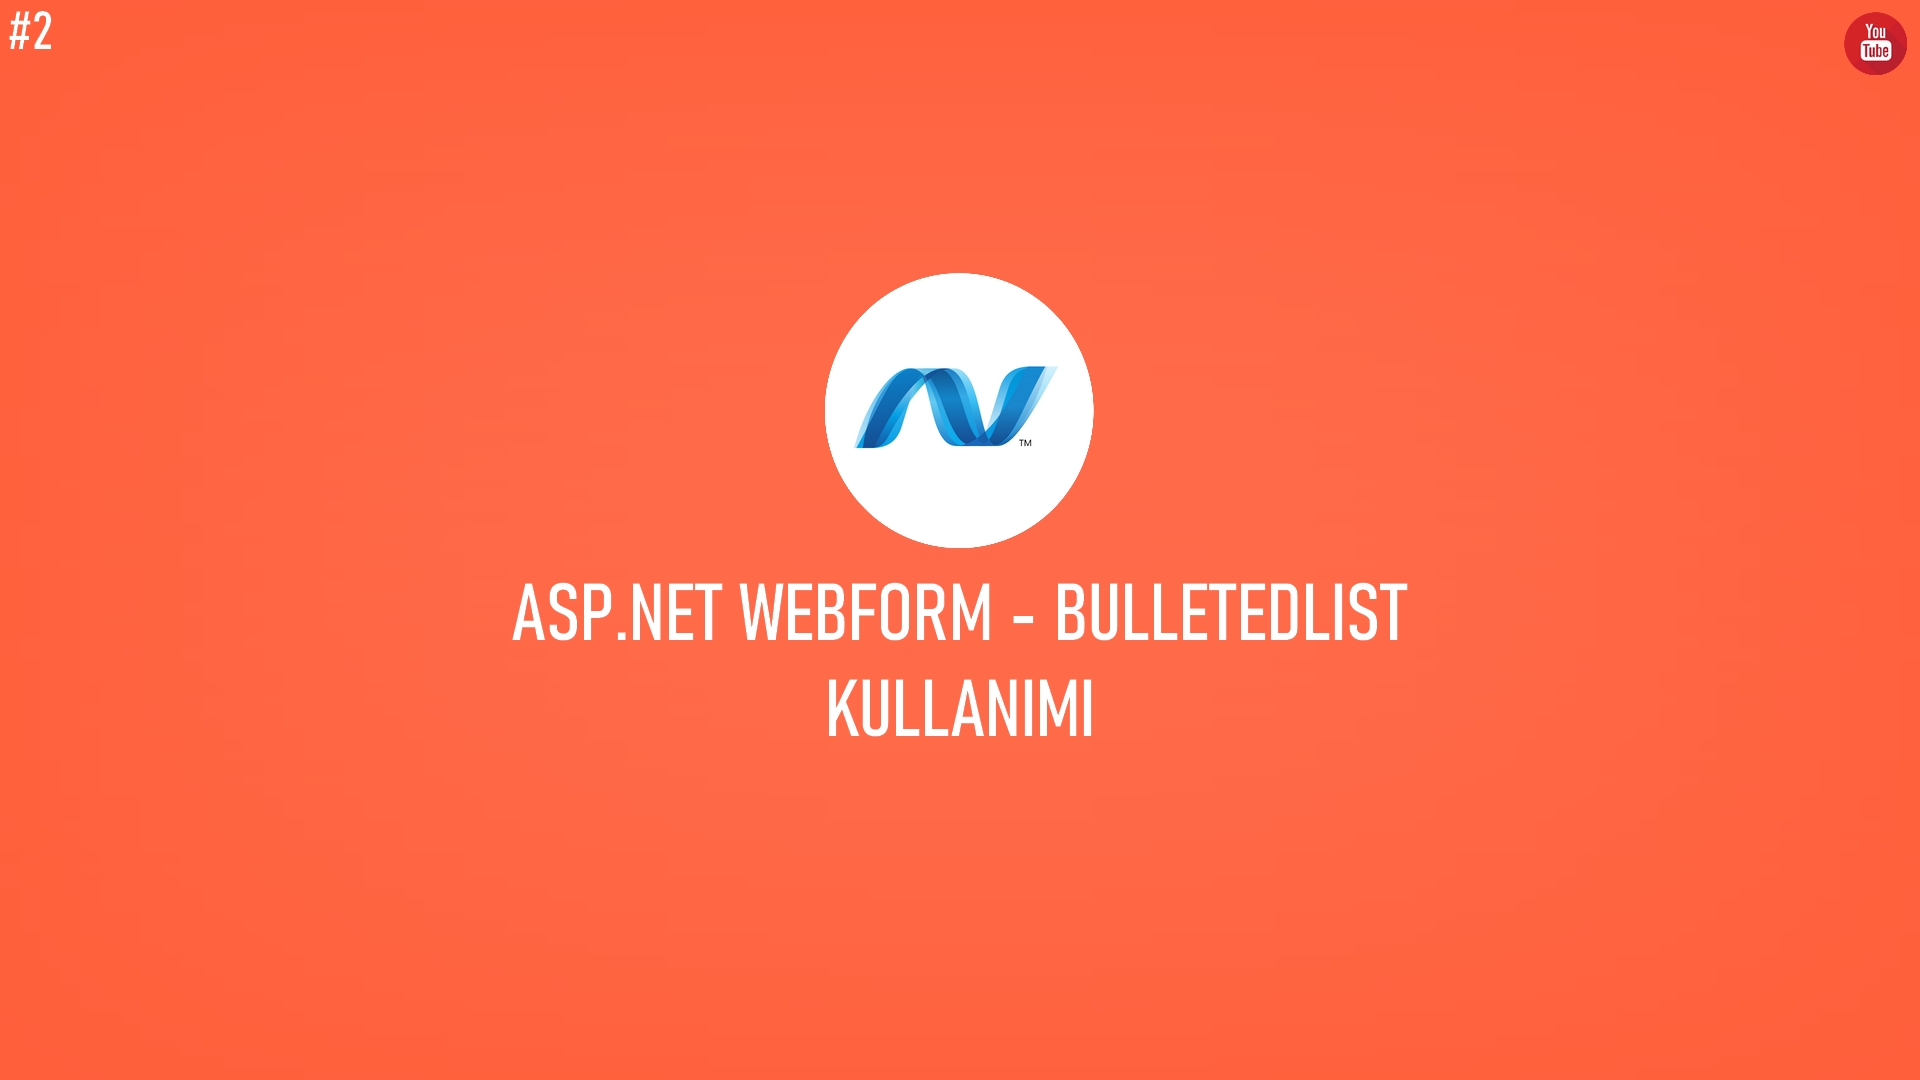 C# ASP.NET WebForm - BulletedList Kullanımı (Video İçerik) başlıklı içeriğin resmi